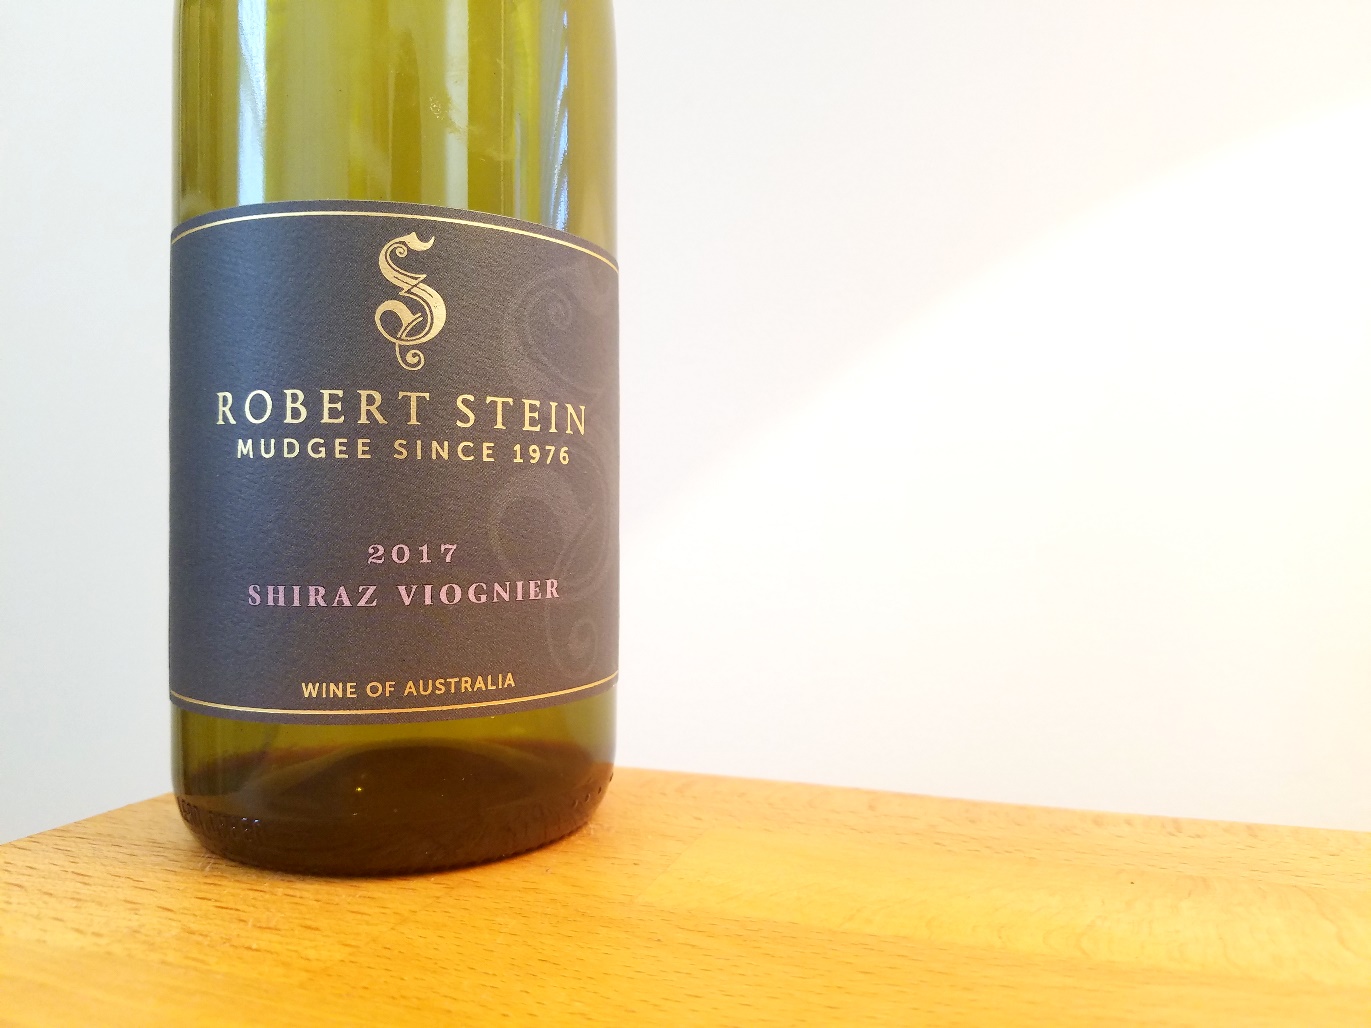 Robert Stein, Shiraz Viognier 2017, Mudgee, New South Wales, Australia, Wine CasualRobert Stein, Shiraz Viognier 2017, Mudgee, New South Wales, Australia, Wine Casual